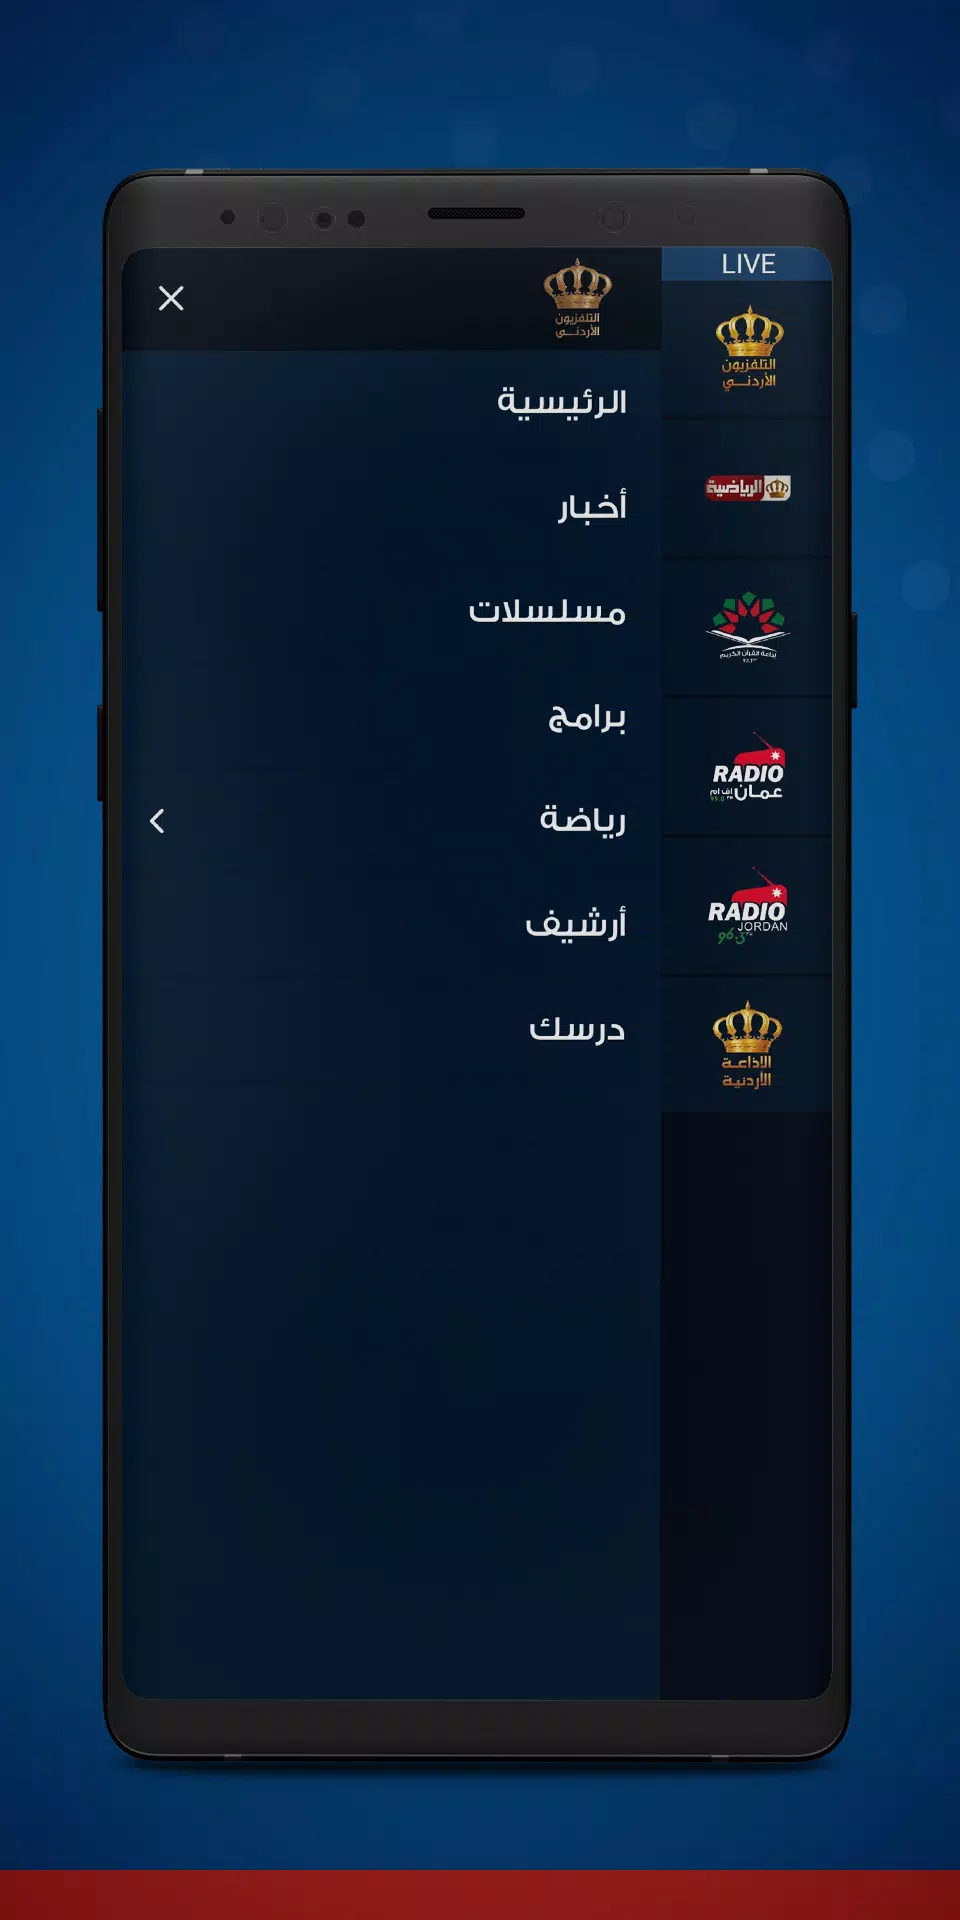 Jordan TV APK for Android Download